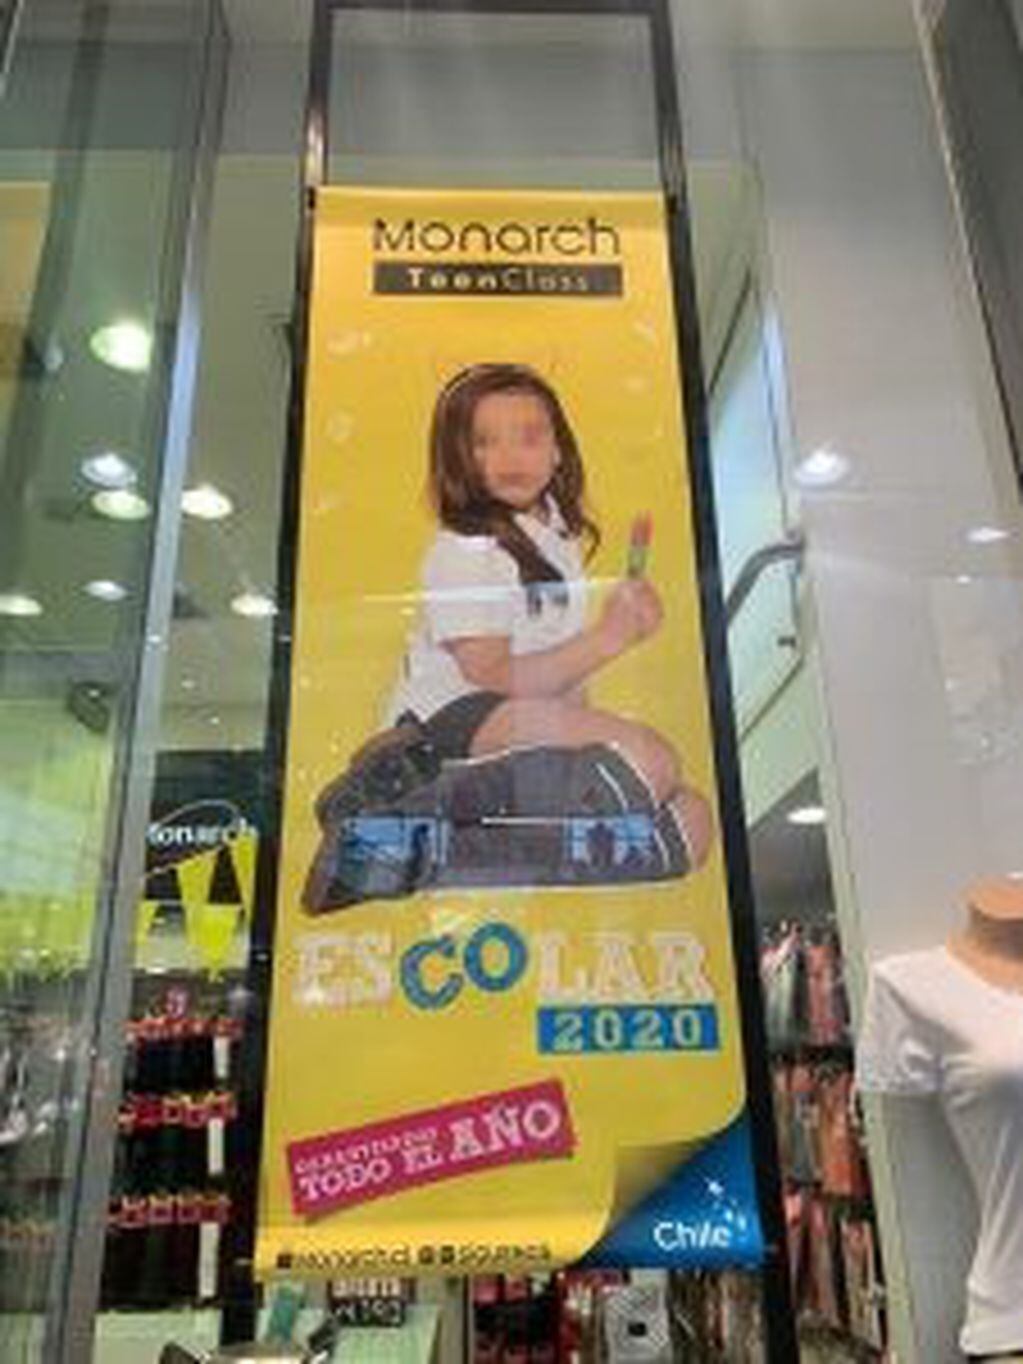 El anuncio de la marca 'Monarch'.